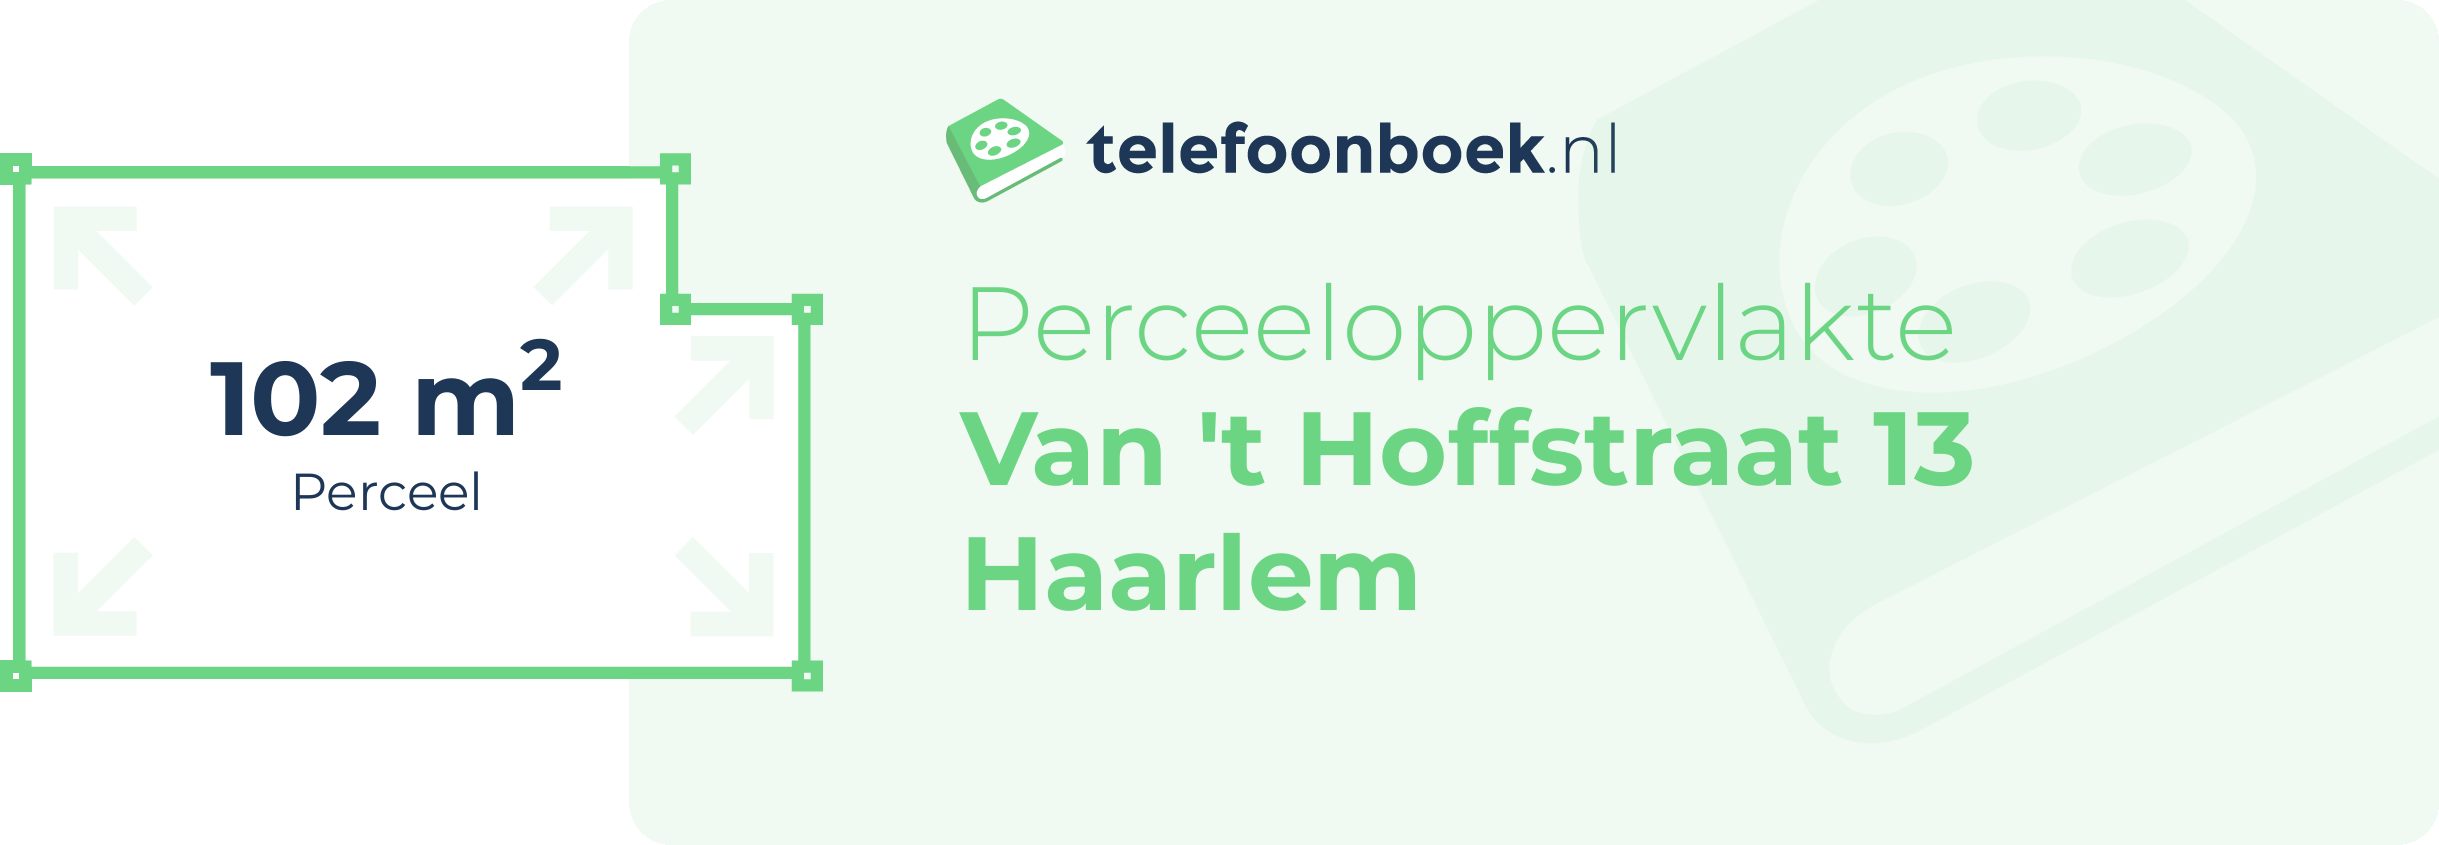 Perceeloppervlakte Van 't Hoffstraat 13 Haarlem